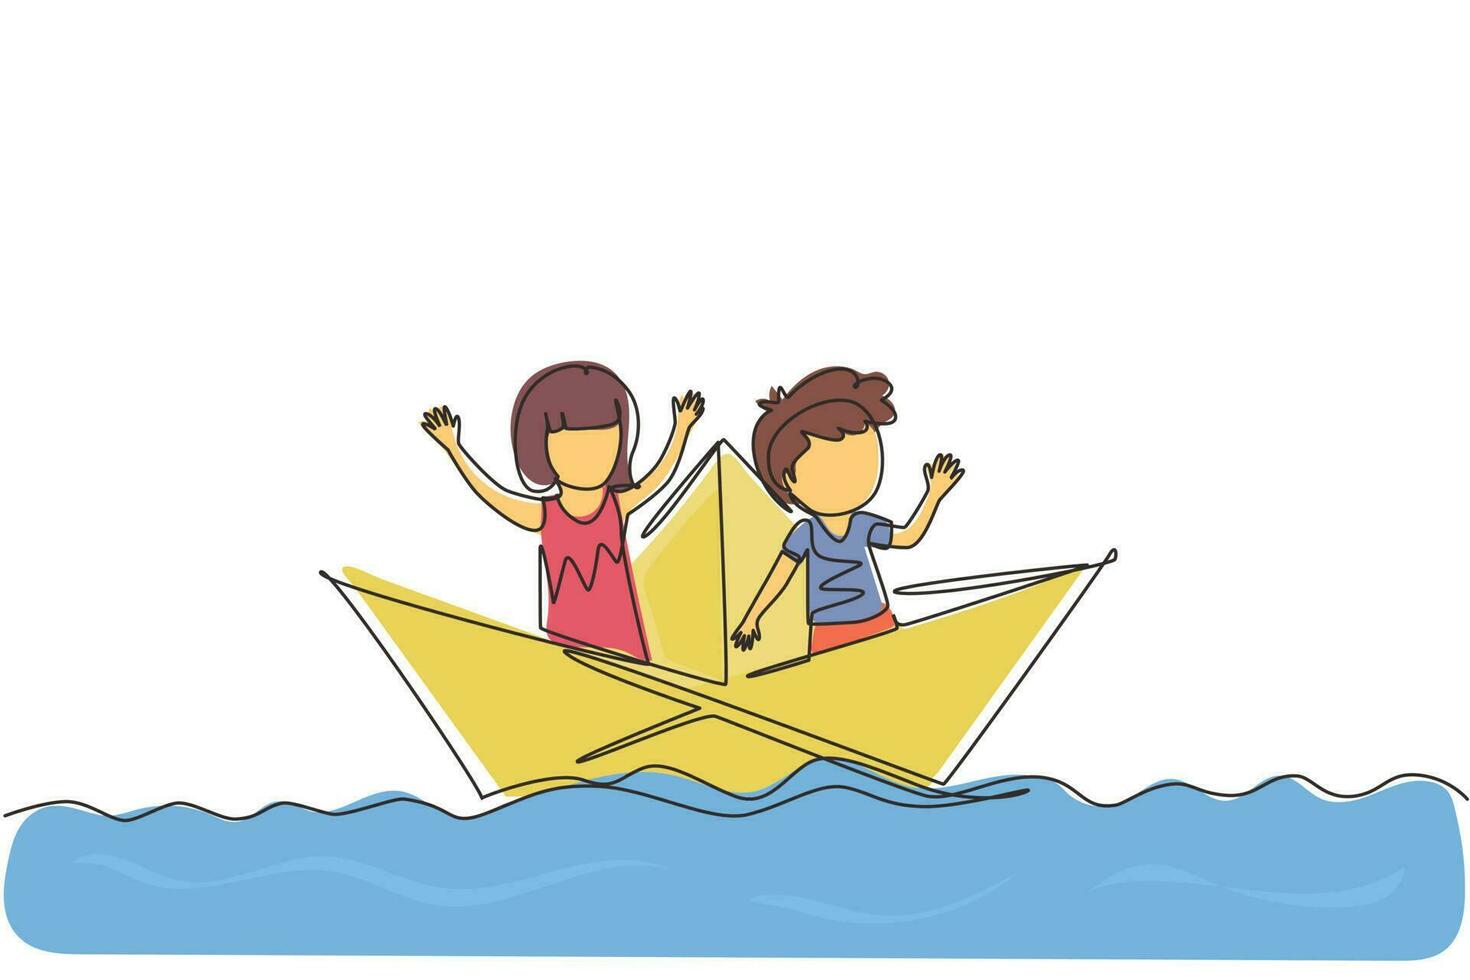 une seule ligne continue dessinant de mignons garçons et filles flottant sur un bateau en papier sur l'eau. heureux enfant souriant s'amusant et jouant au marin dans un monde imaginaire. illustration vectorielle de conception graphique d'une ligne vecteur